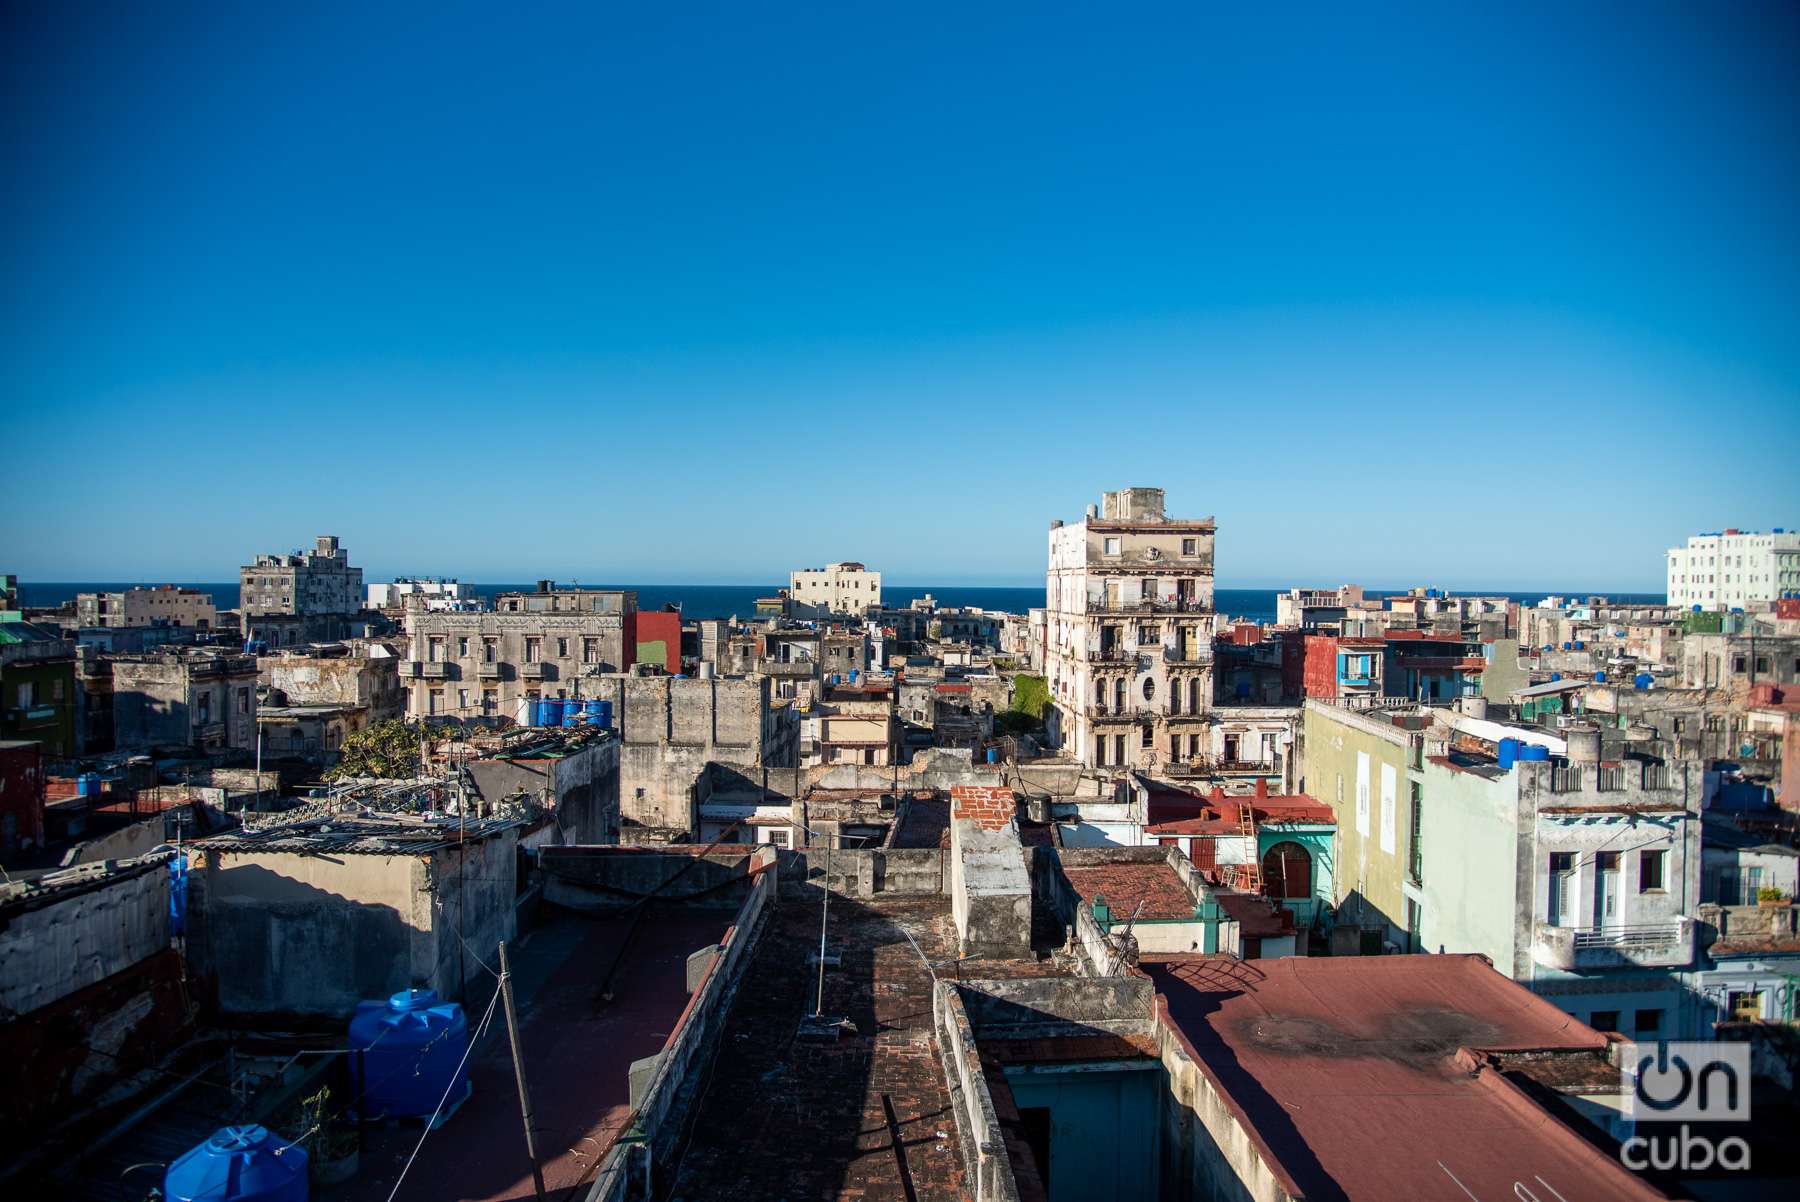 Vista de La Habana desde la terraza de La Guarida. Foto: Kaloian.